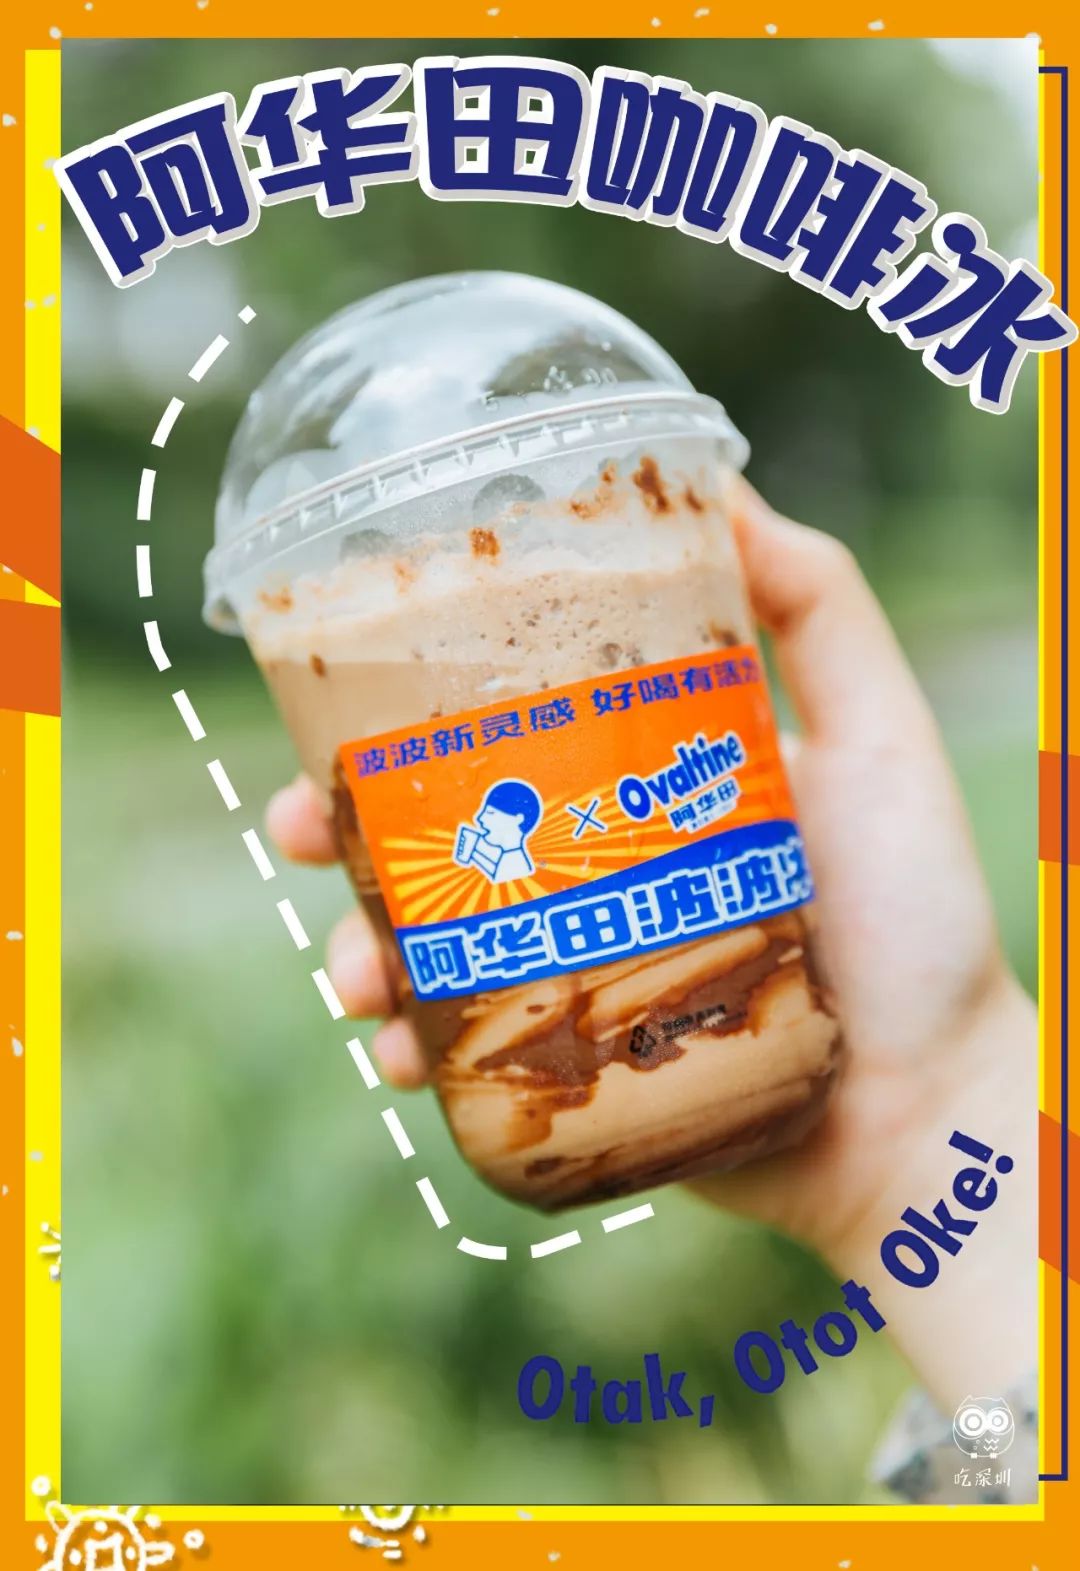 除阿华田咖啡冰仅在咖啡出售的门店上线,mark~②阿华田波波冰和阿华田